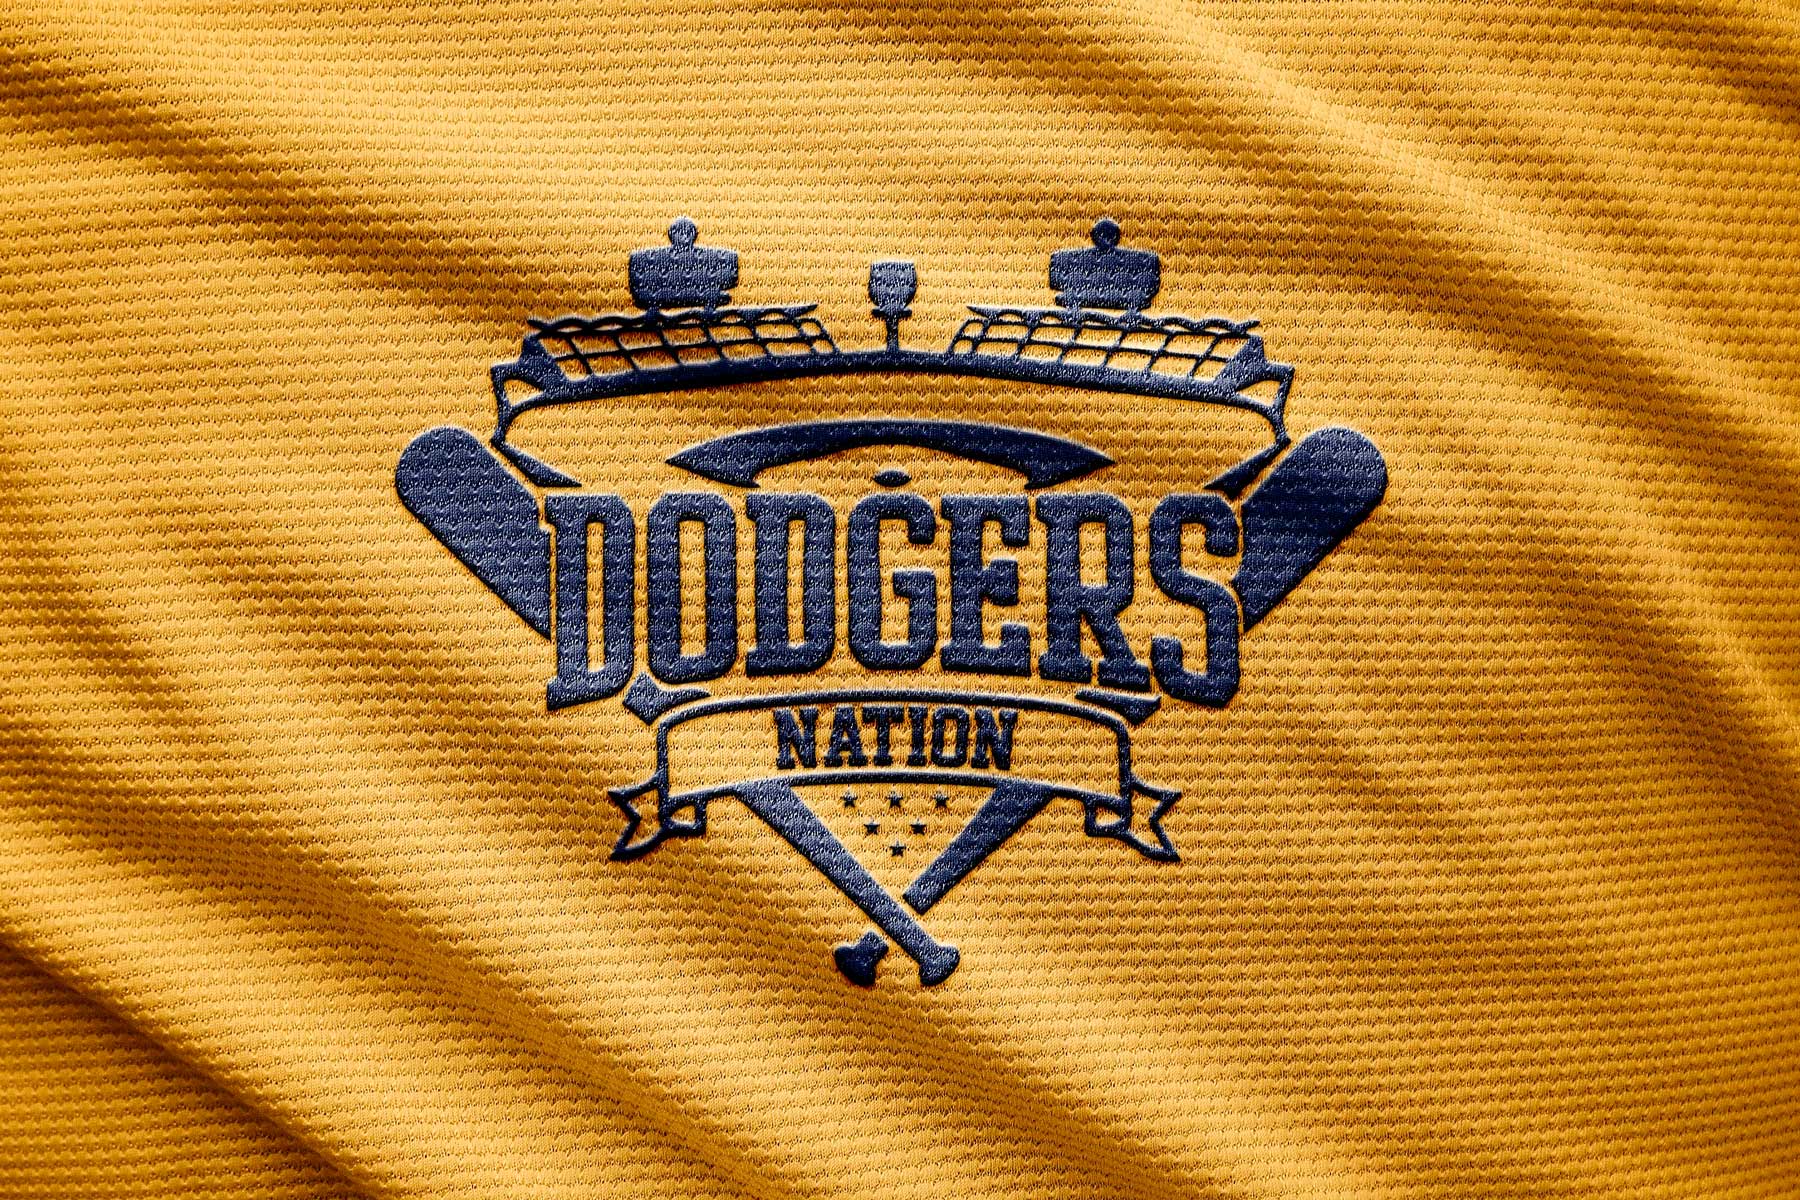 5 Files Of Los Angeles Dodgers Logo Bundle Svg, Sport Svg